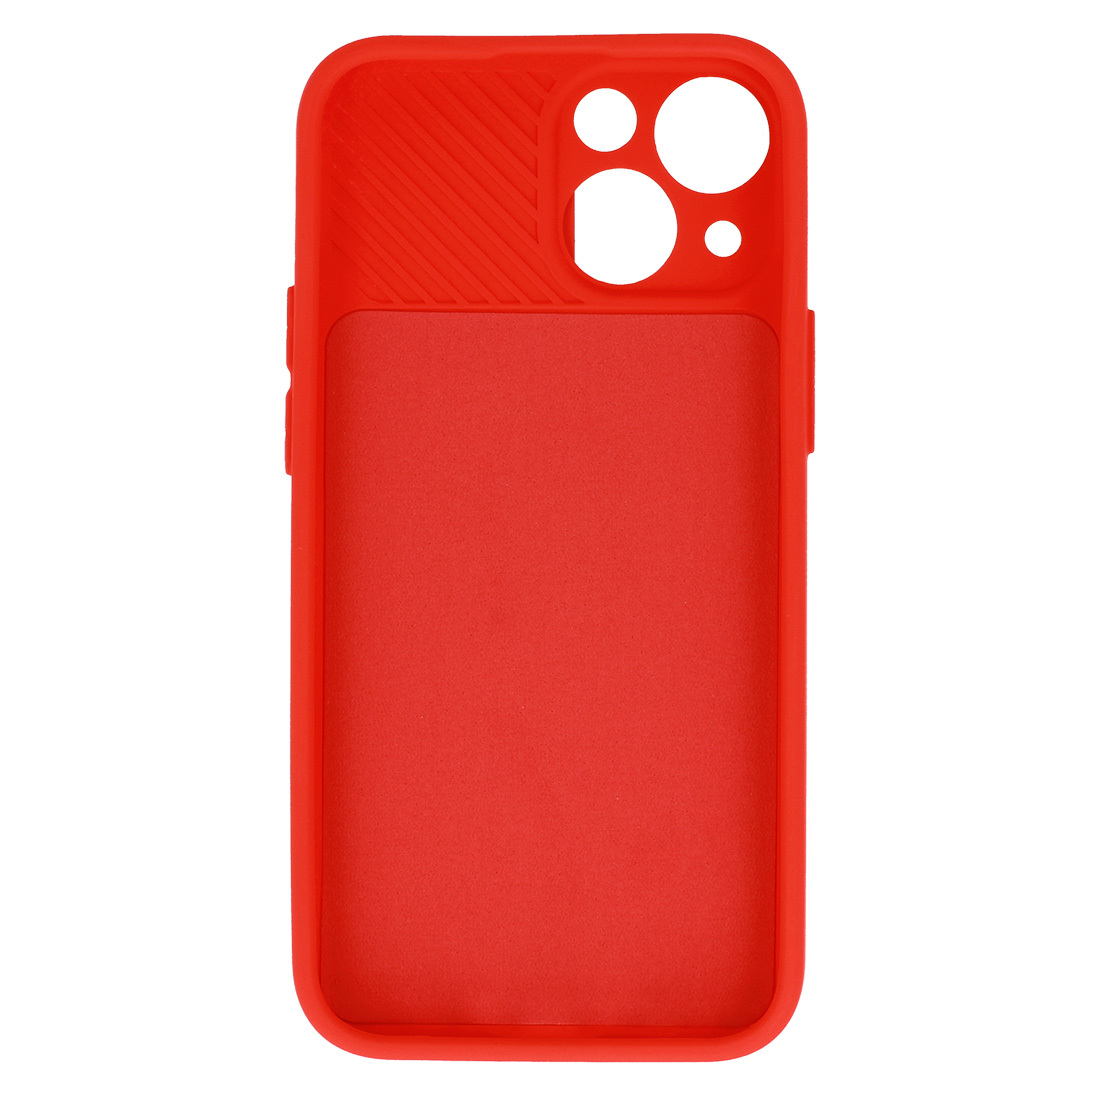 Pokrowiec etui z elastycznego TPU Camshield Soft Case czerwone APPLE iPhone X / 5